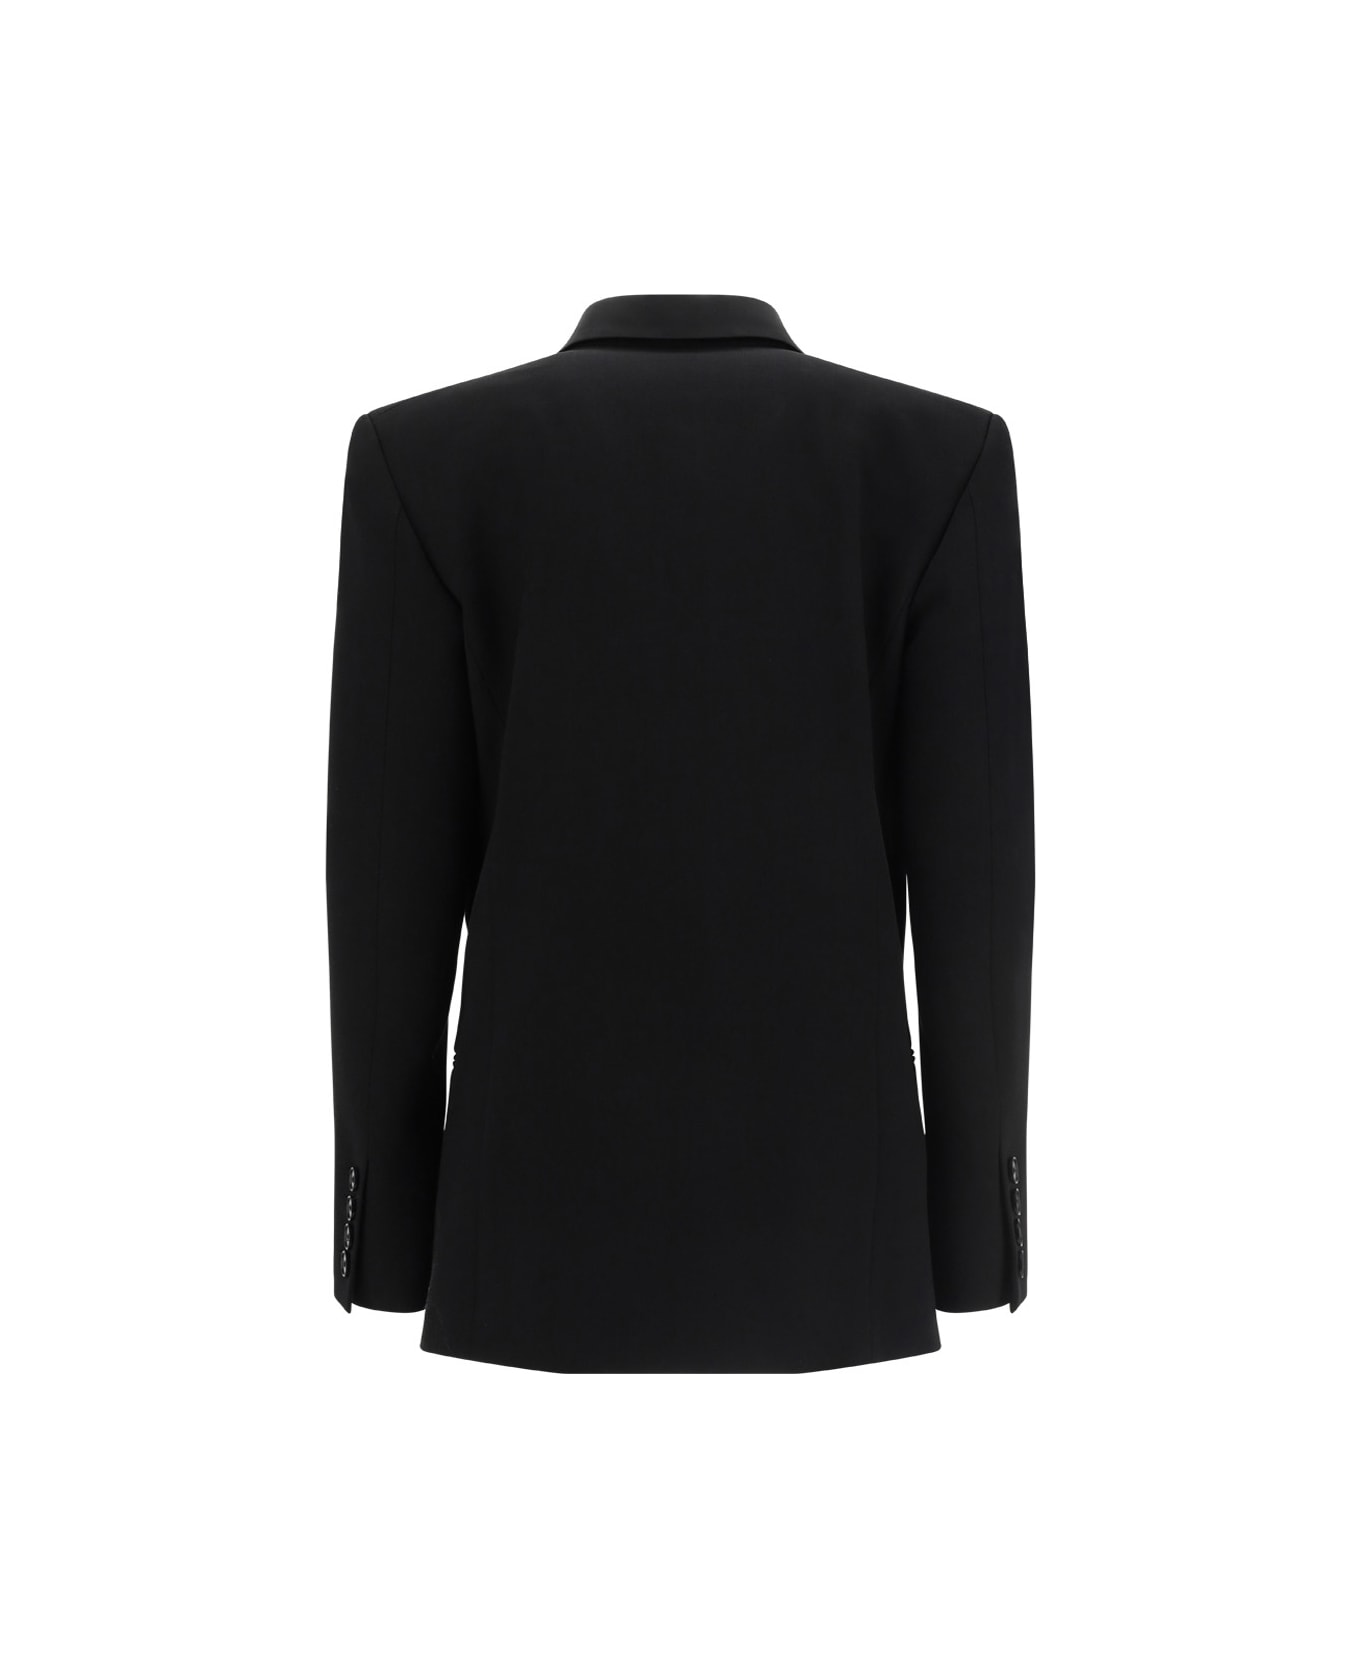 Stella McCartney Tuxedo Blazer Jacket - Black